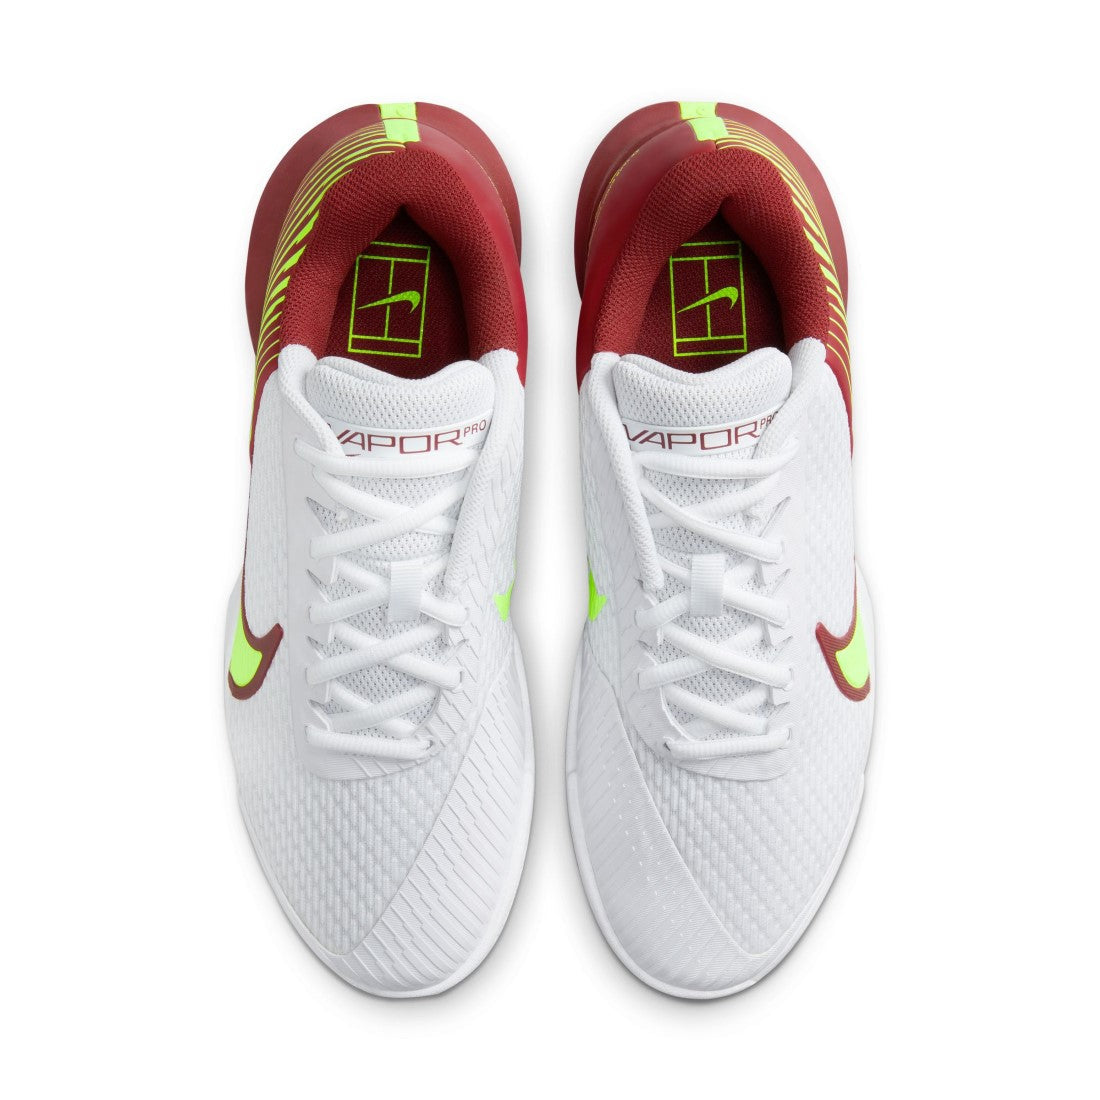 NikeCourt Air Zoom Vapor Pro 2 Tennis Shoes